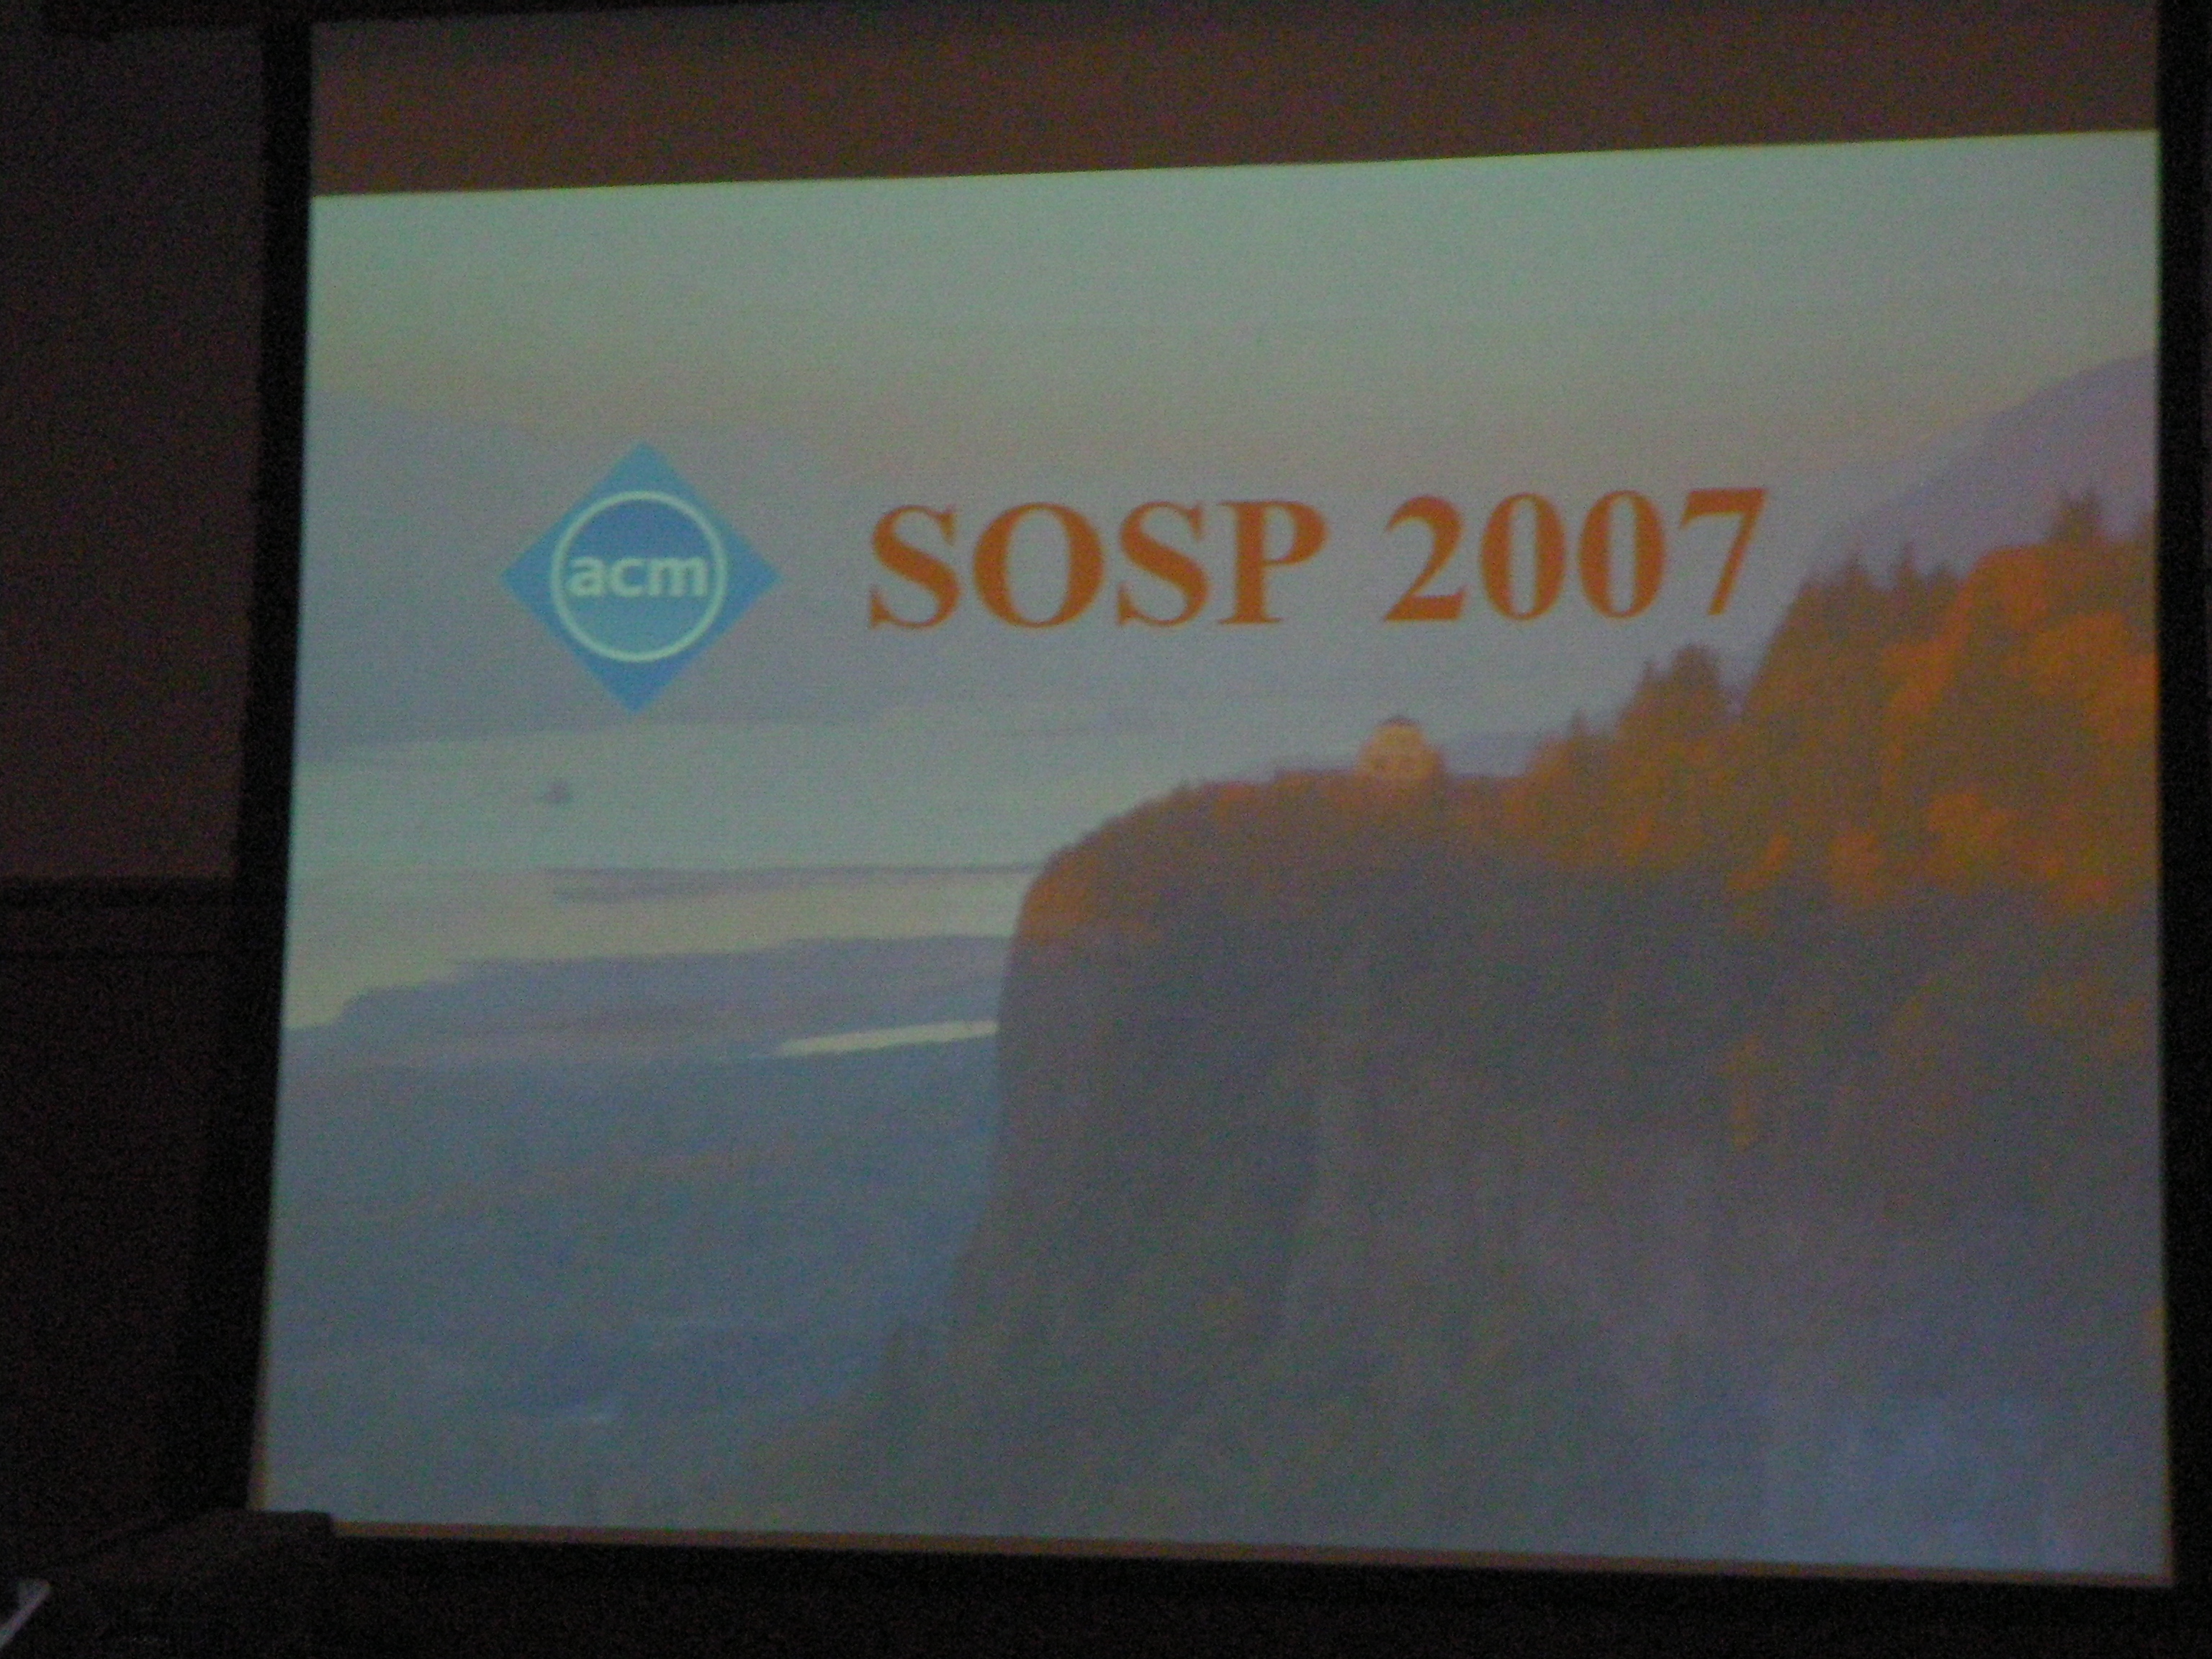 SOSP Slide